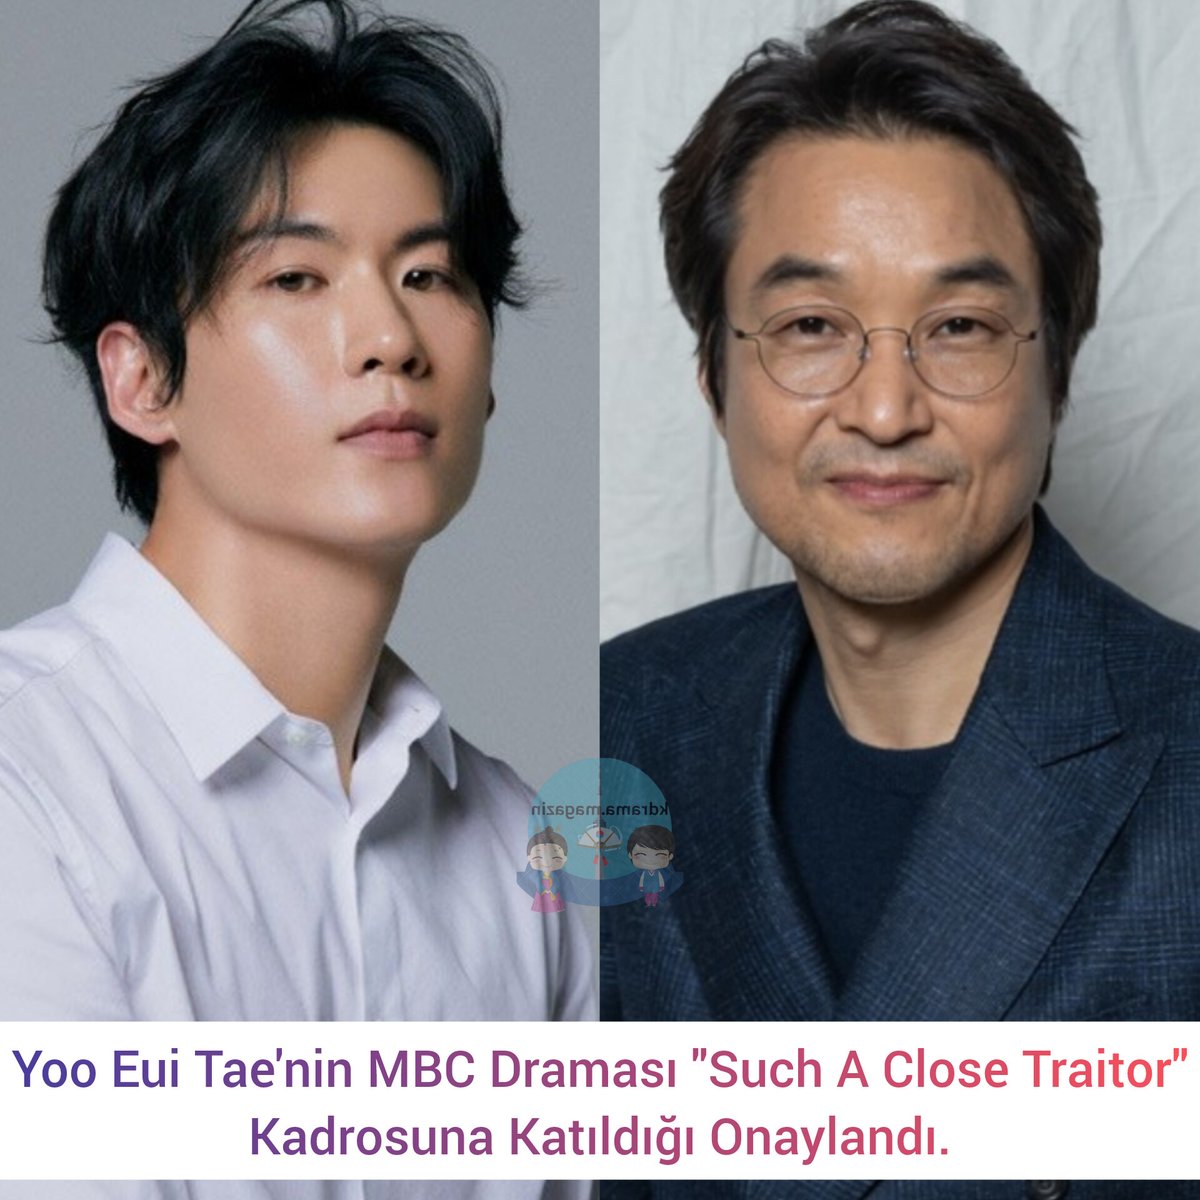 #YooEuiTae'nin MBC Draması #SuchACloseTraitor Kadrosuna Katıldığı Onaylandı.

🎬Kendisi, #ChaeWonBin'in lisedeki öğretmeni olan, bir öğretmen olarak inançlı ve öğrencilerle dikkatle ilgilenen Park Jun-tae'yi canlandıracak. 

#HanSukKyu #HanYeRi #OhYeonSoo #SuchACloseTraitor